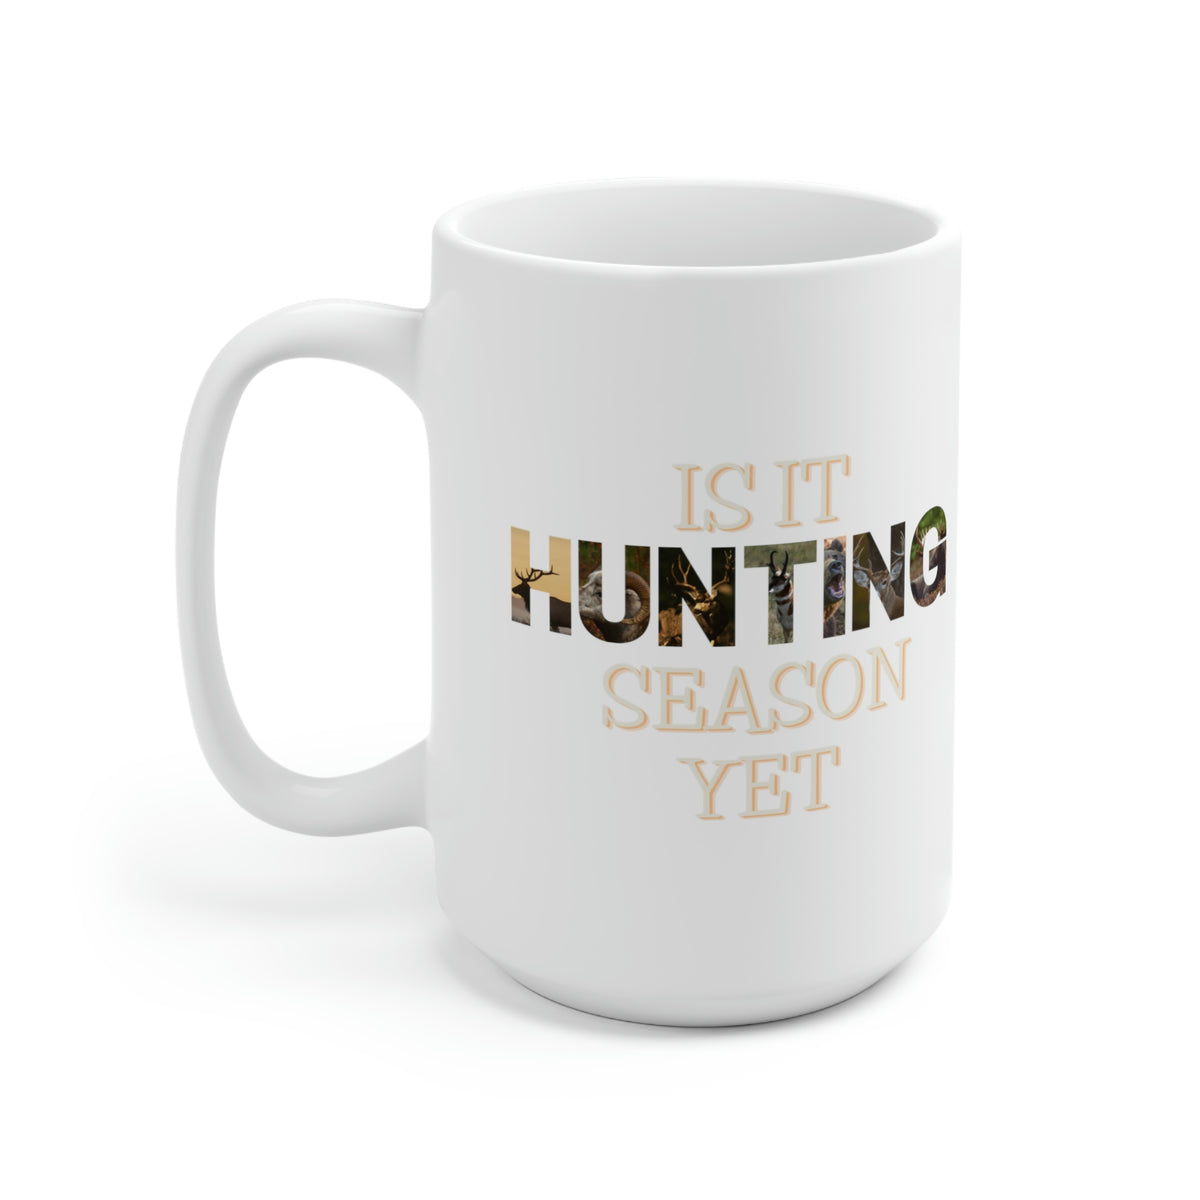 Is It Hunting Season Yet White Mug, 15oz